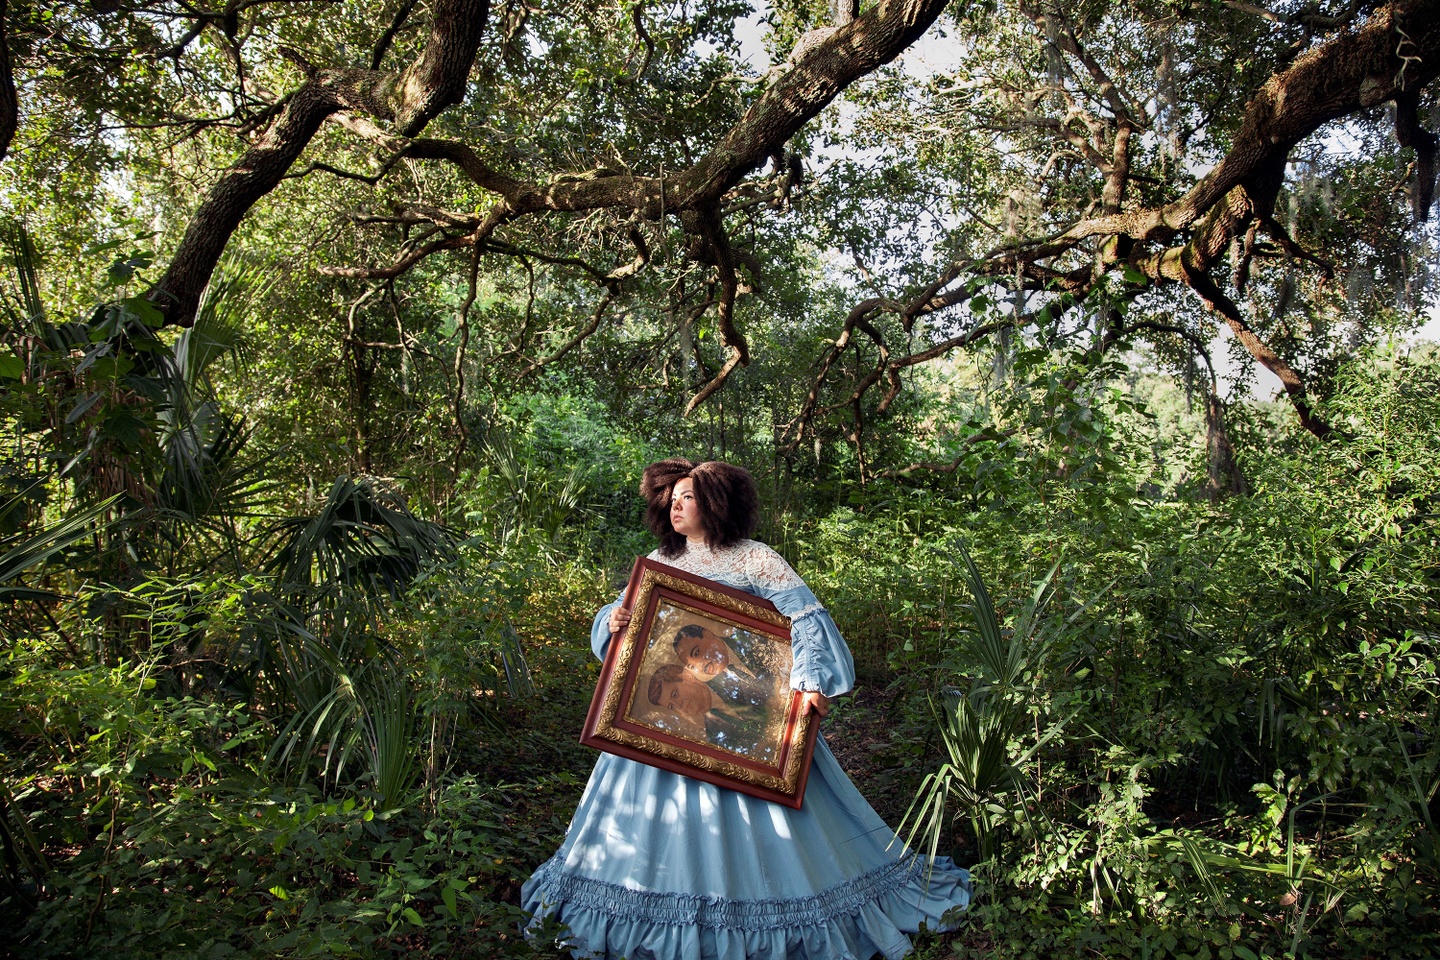 A woman carries a framed double-portrait an a verdant landscape